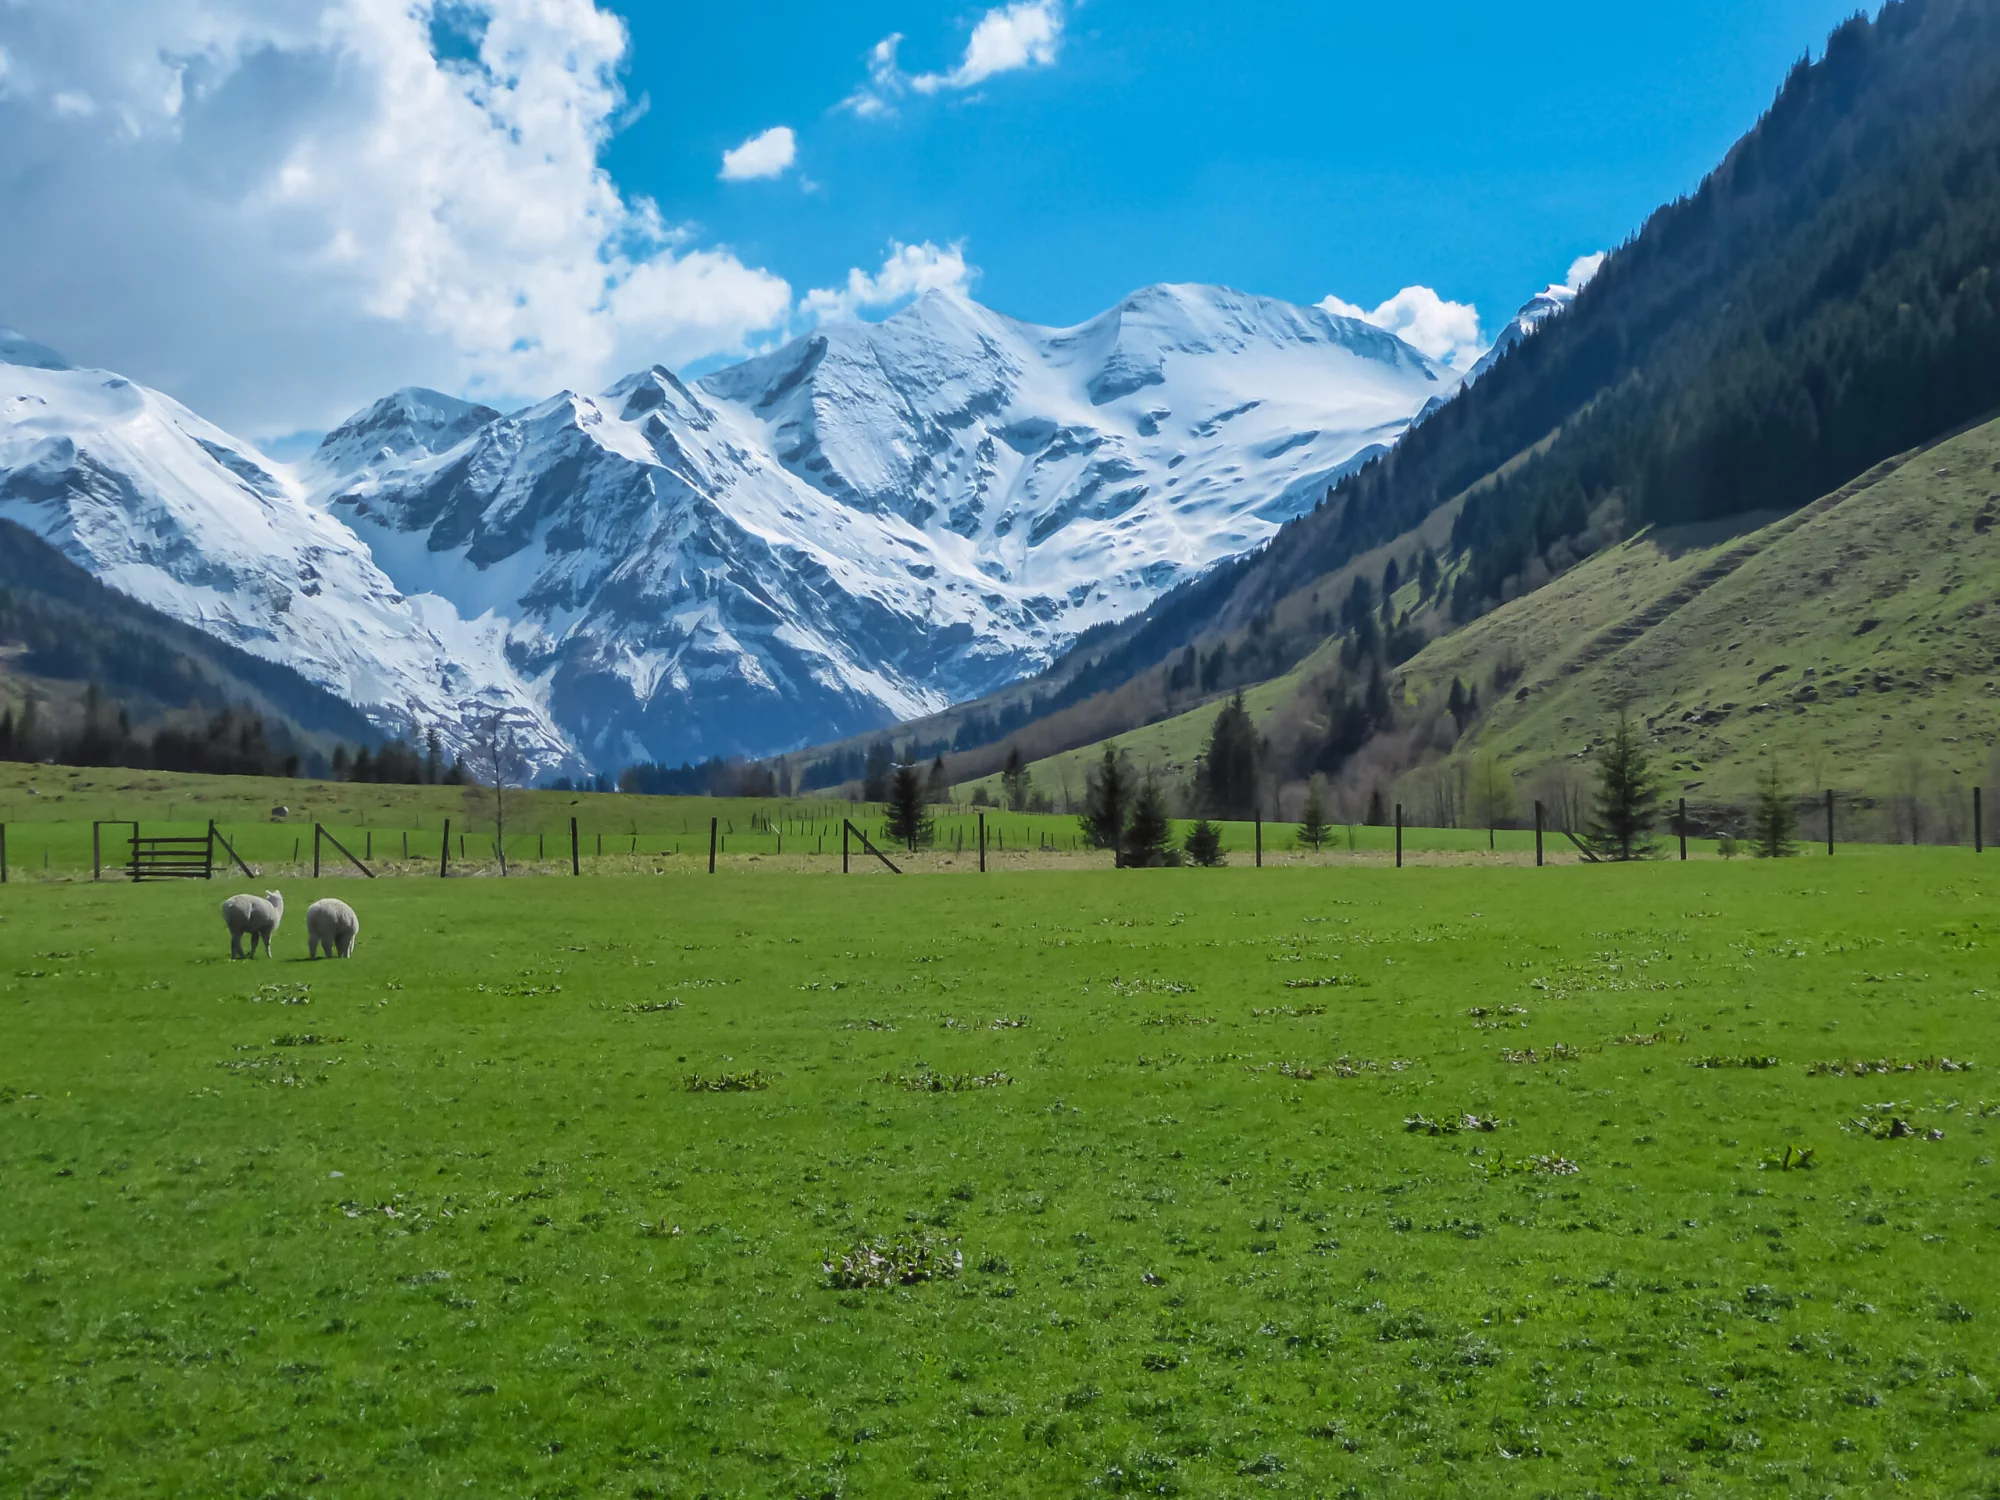 Pecore al pascolo su un verde prato alpino con vista panoramica sulle cime innevate degli Alti Tauri a Fusch am Grossglockner, Salisburgo, Austria. Una natura meravigliosa nelle remote Alpi austriache